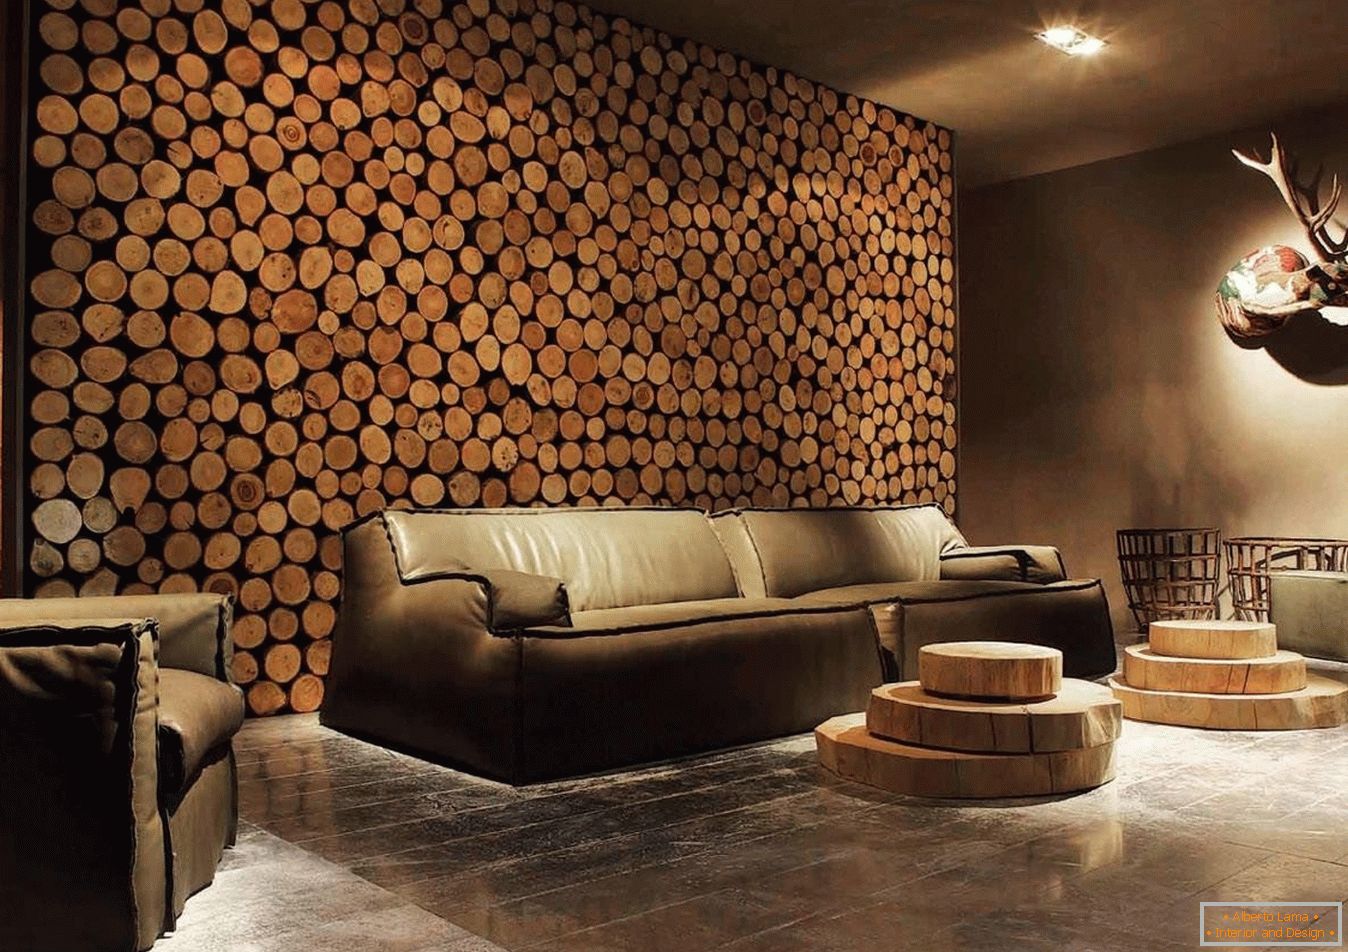 Spilas in legno di legno come decorazione delle pareti del soggiorno